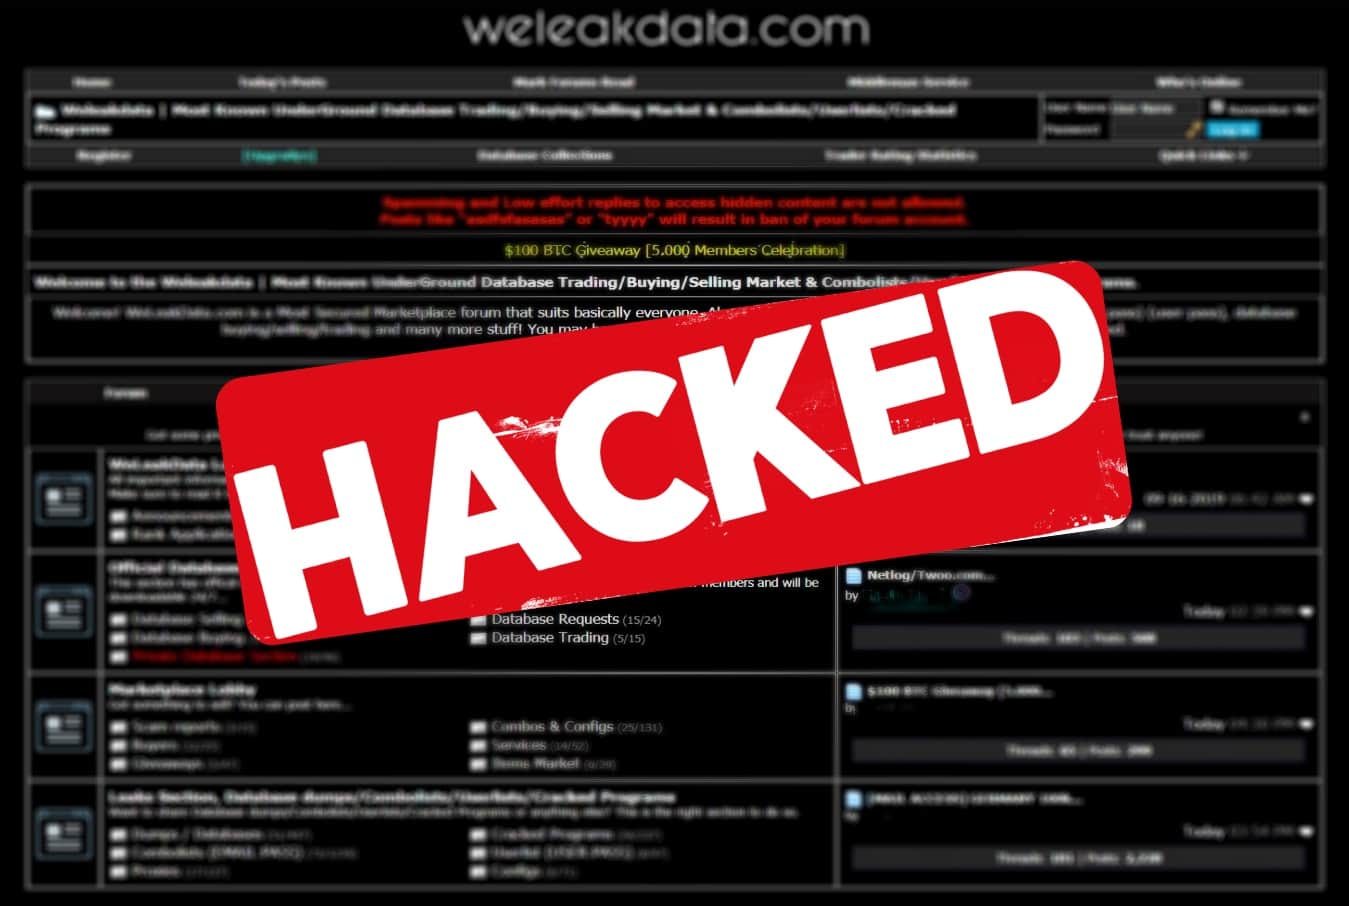 Stolen database trading site WeLeakData hacked; data leaked